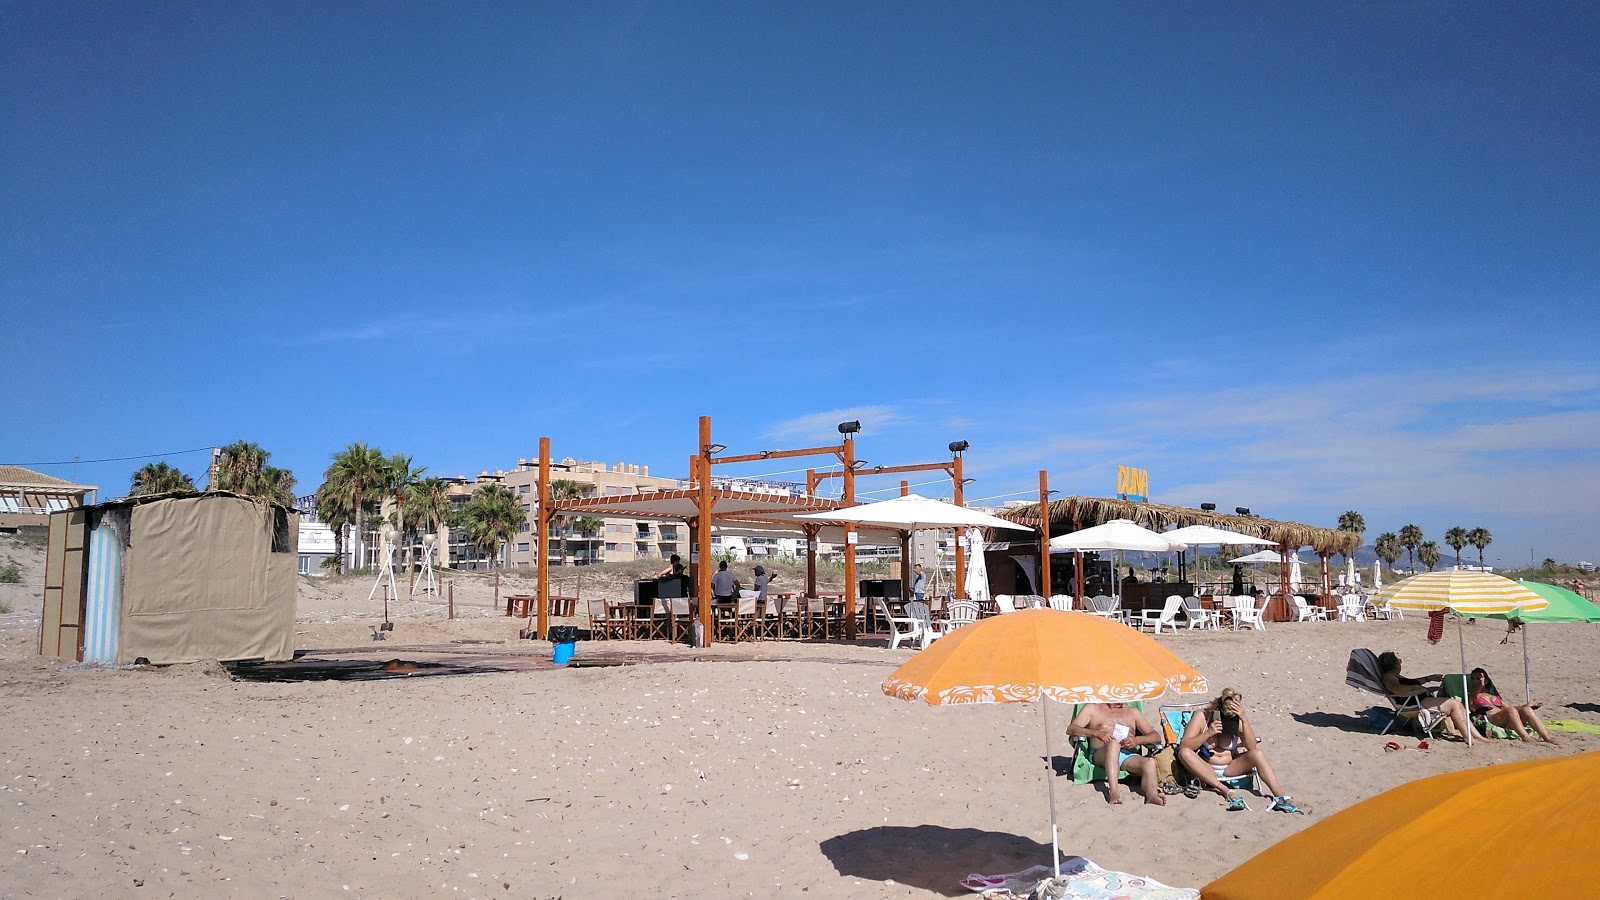 Daimus Plajı'in fotoğrafı - Çocuklu aile gezginleri için önerilir